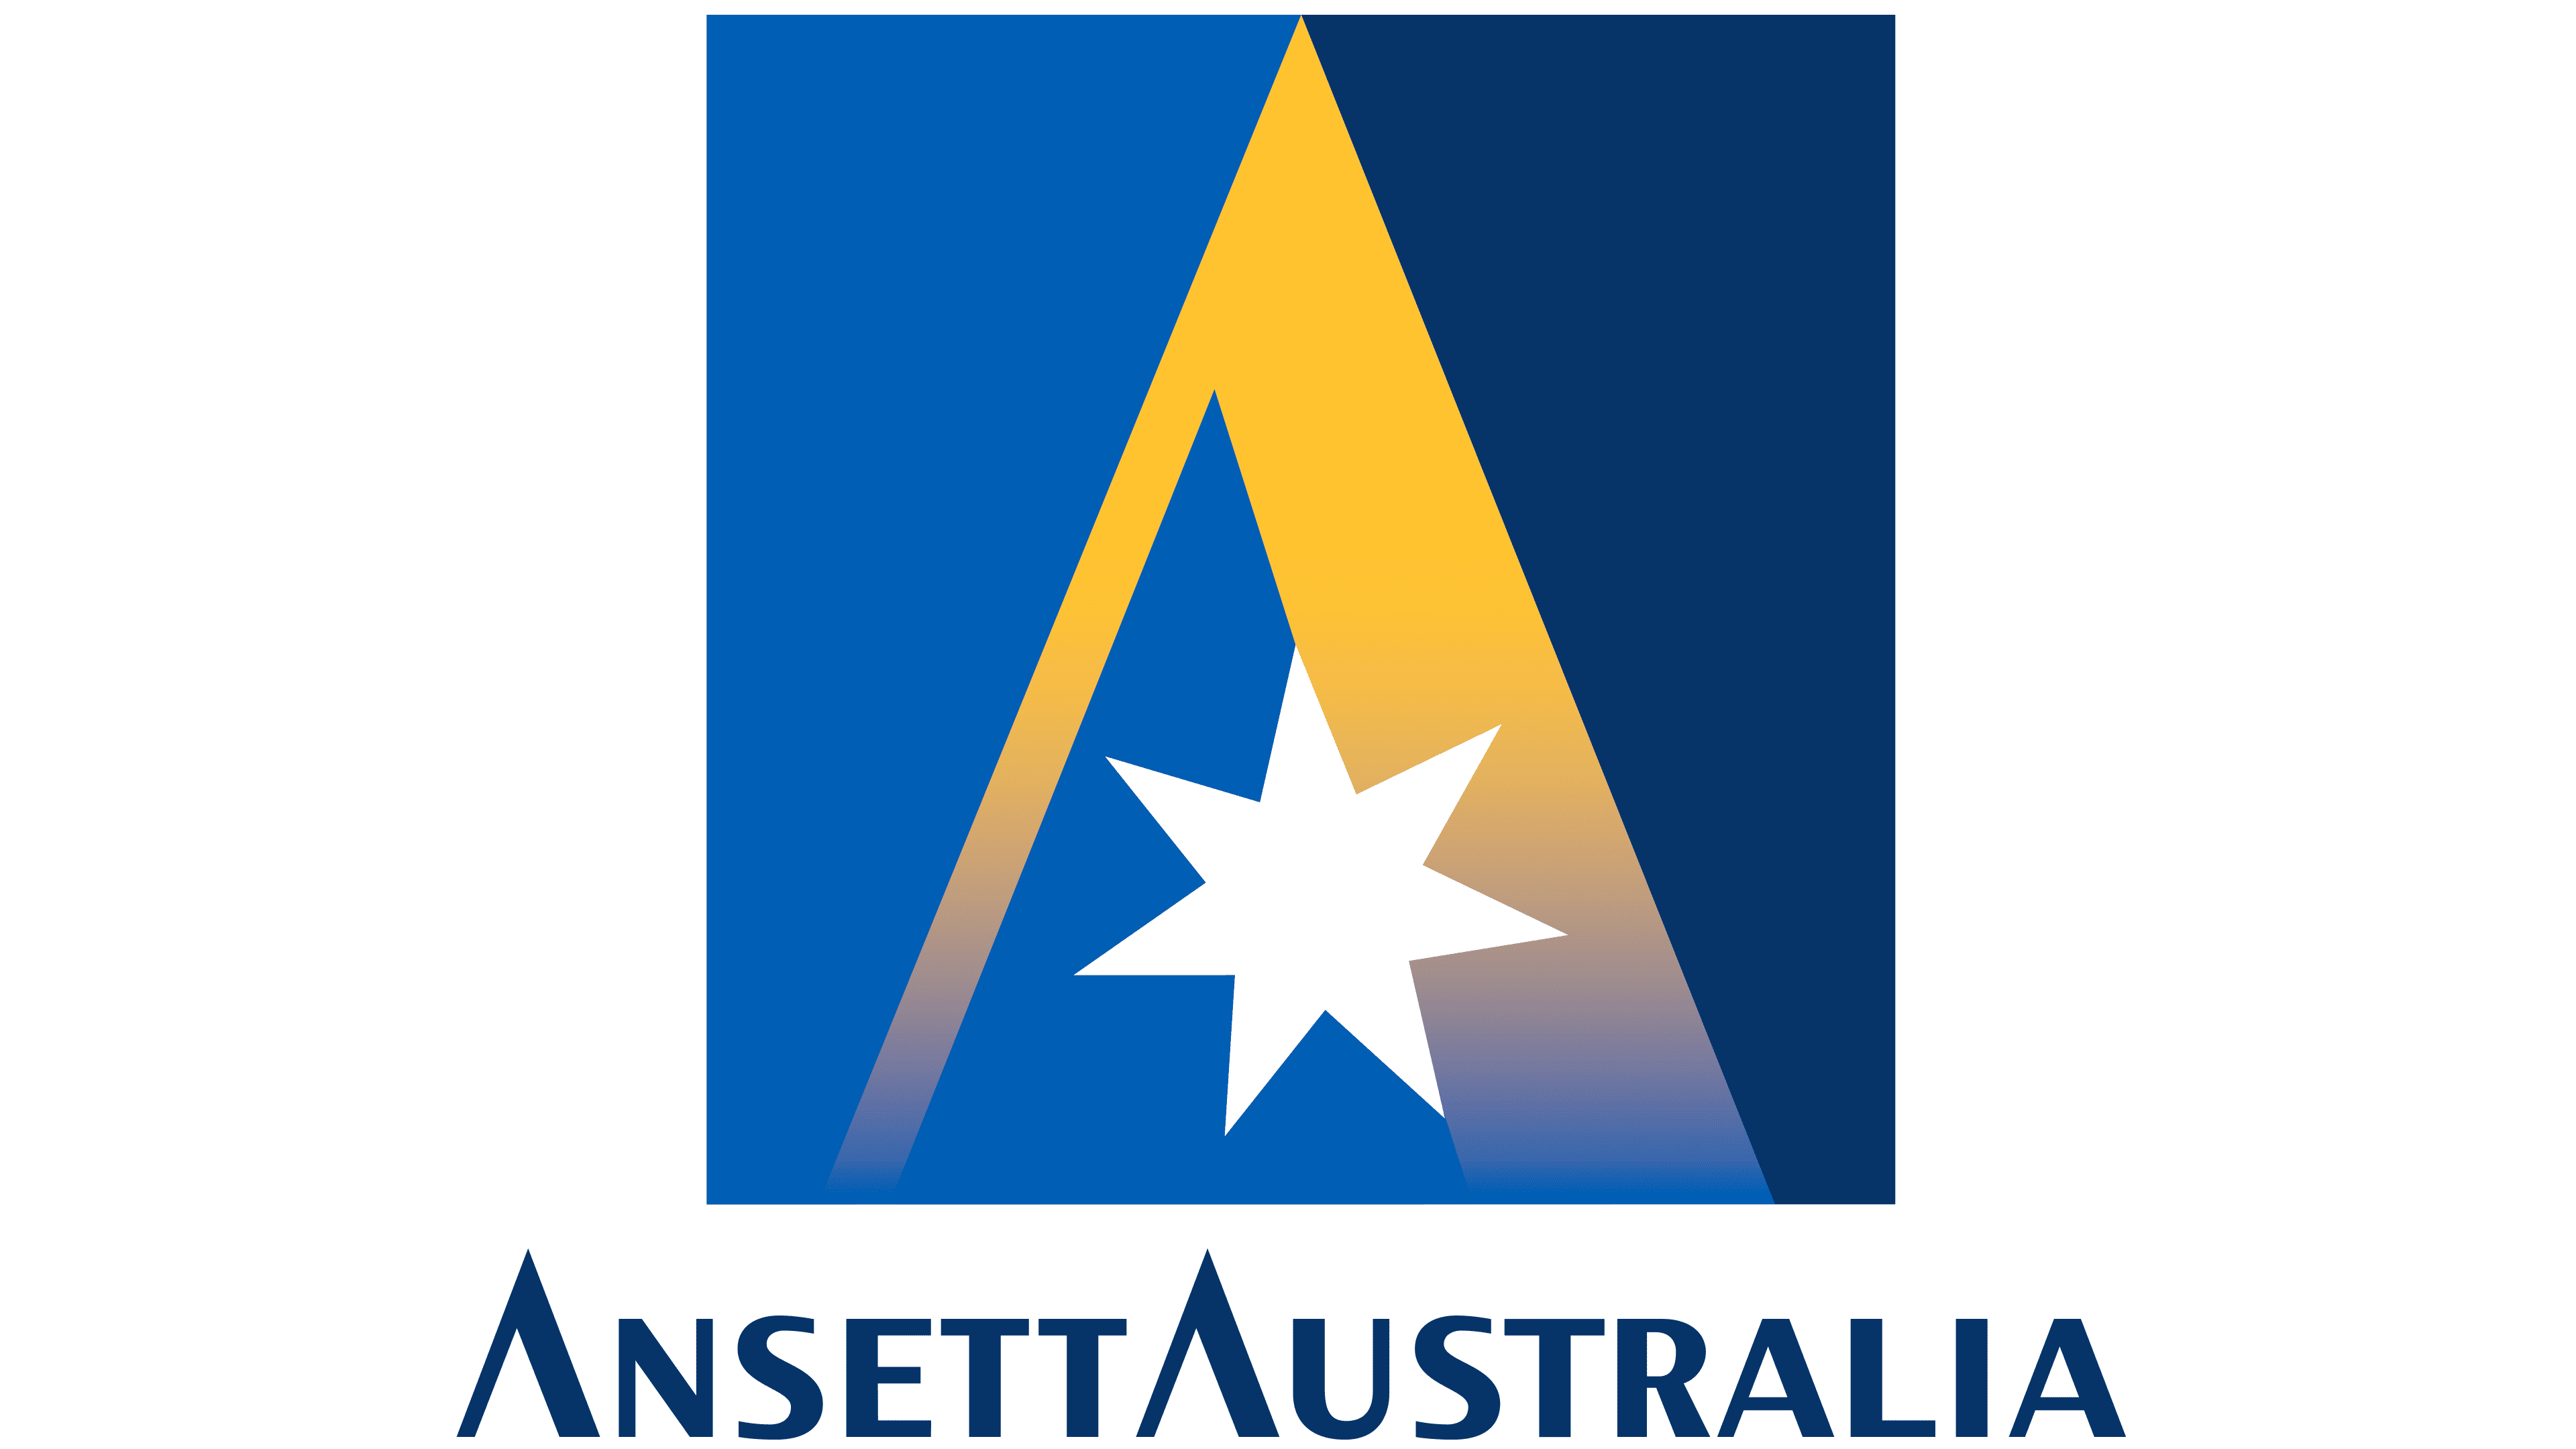 Australia Traveling Logo Template #Logo #Traveling #Australia #Template |  Travel logo, Logo templates, Business branding design